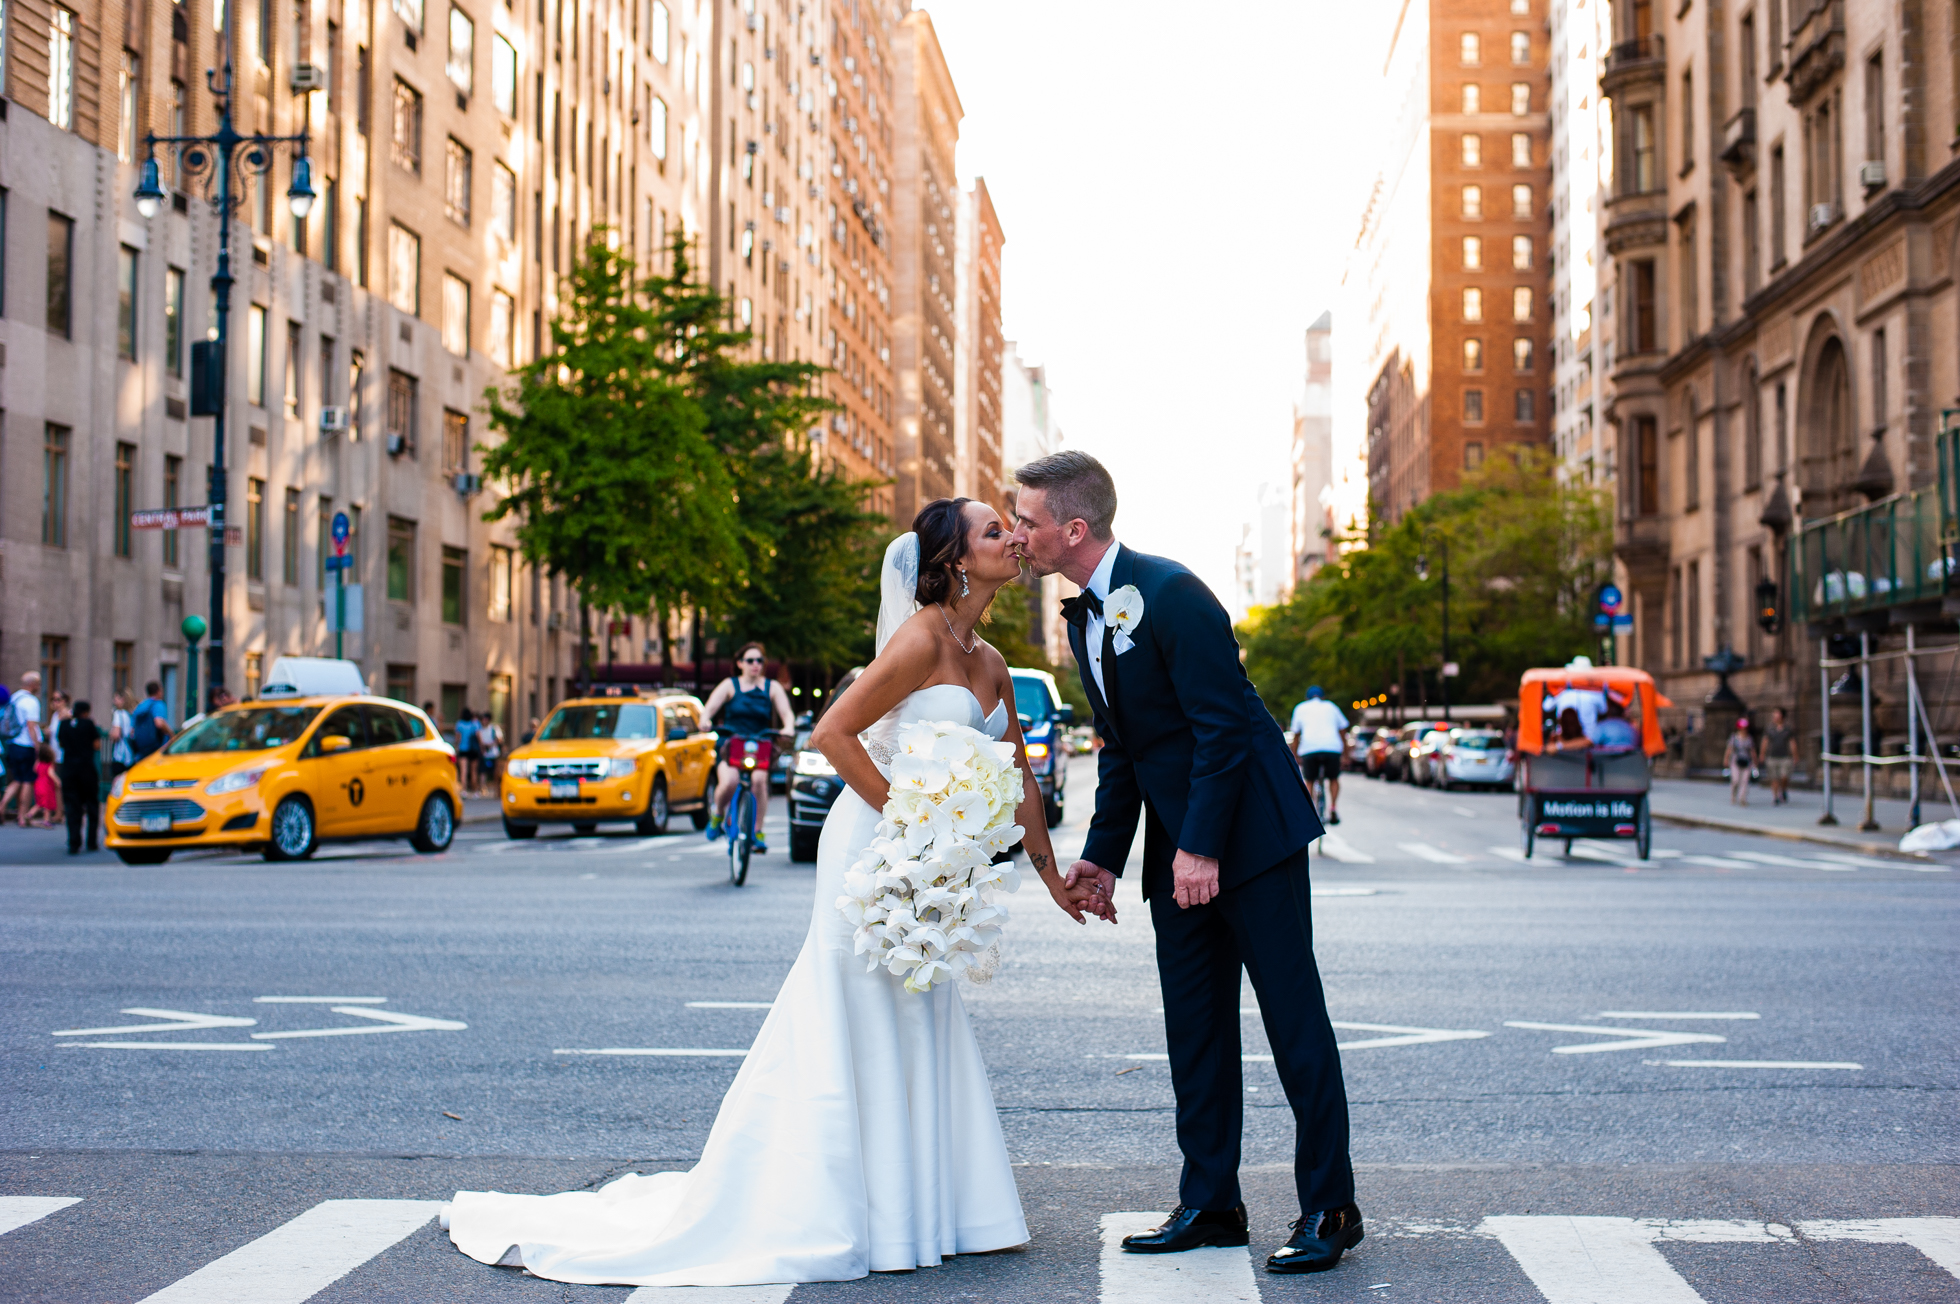 Central Park wedding portraits